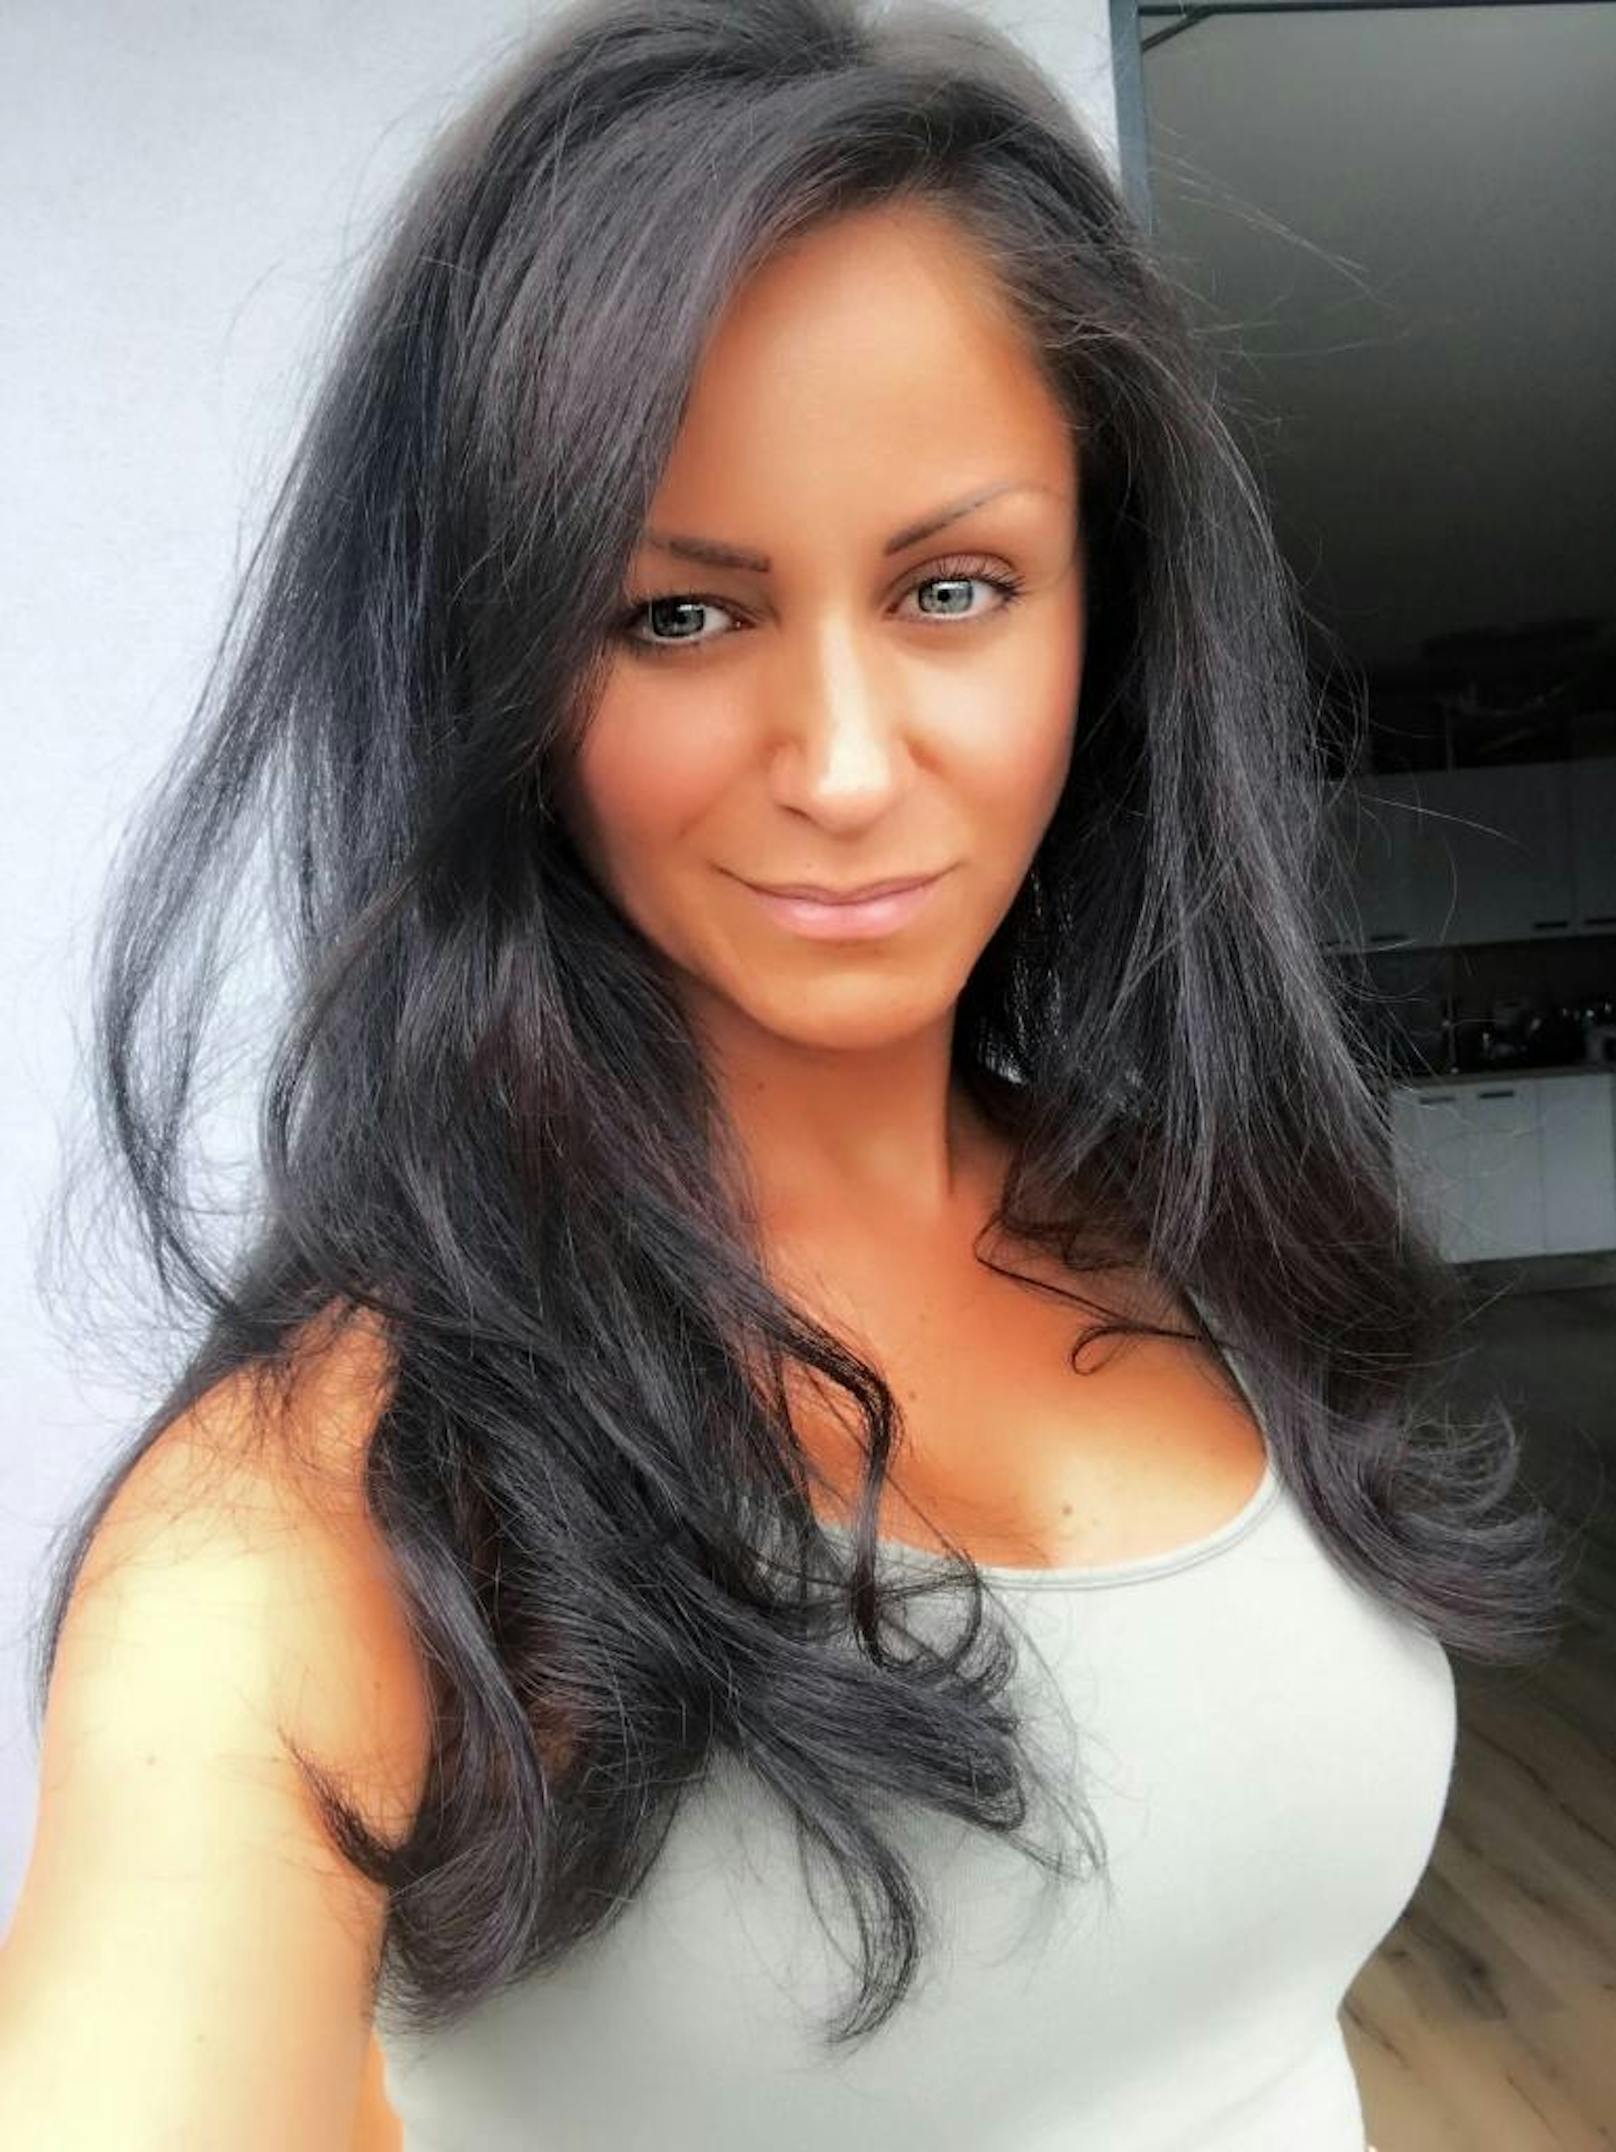 Tagessiegerin 27. Juli: Katya (35) aus Wien bekam die meisten Likes von der "Heute"-Community